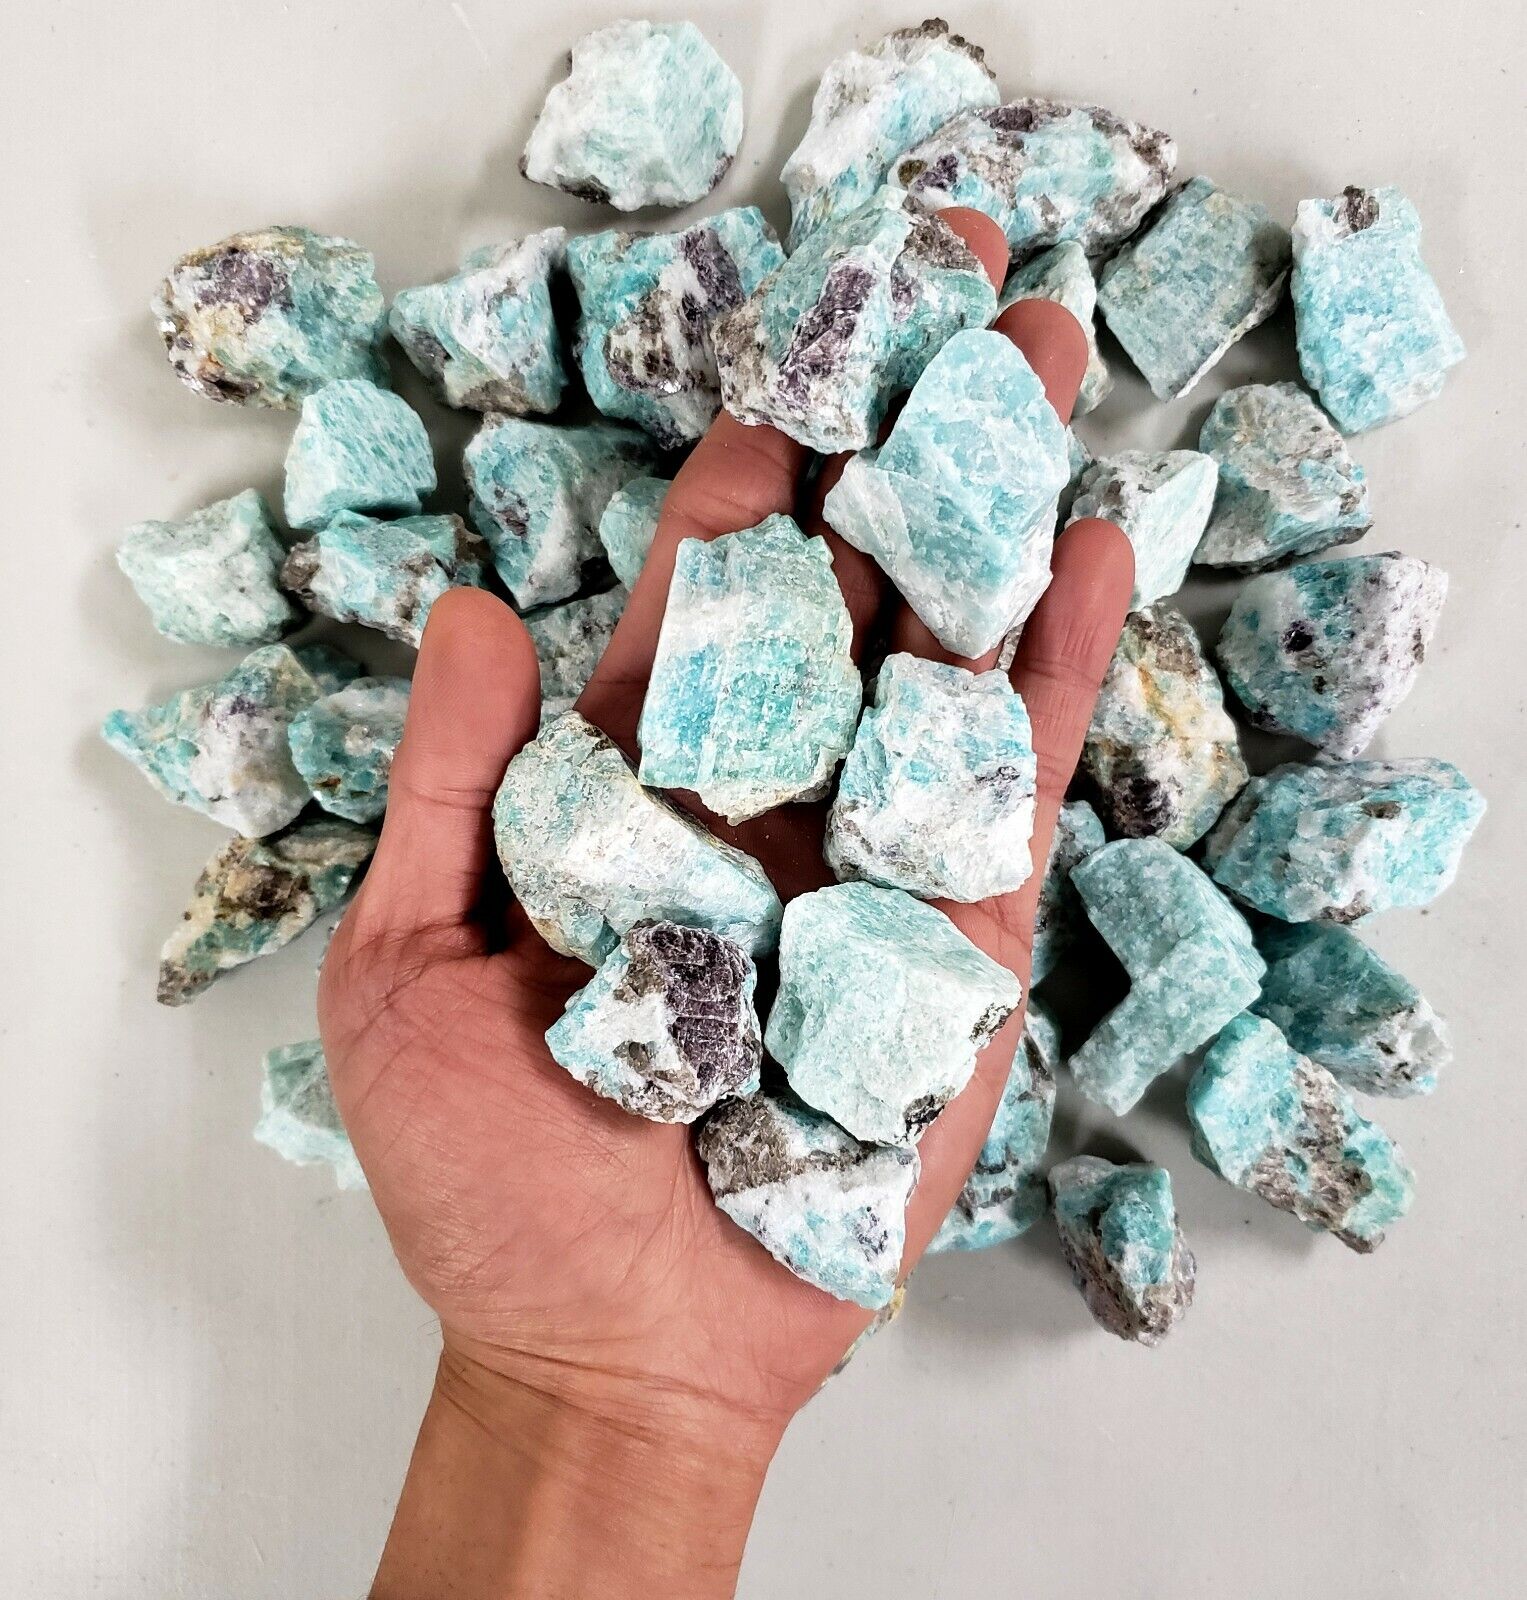 Raw Amazonite Crystal - Bulk Wholesale Rough Stones - Amazonite Gemstone Brazil